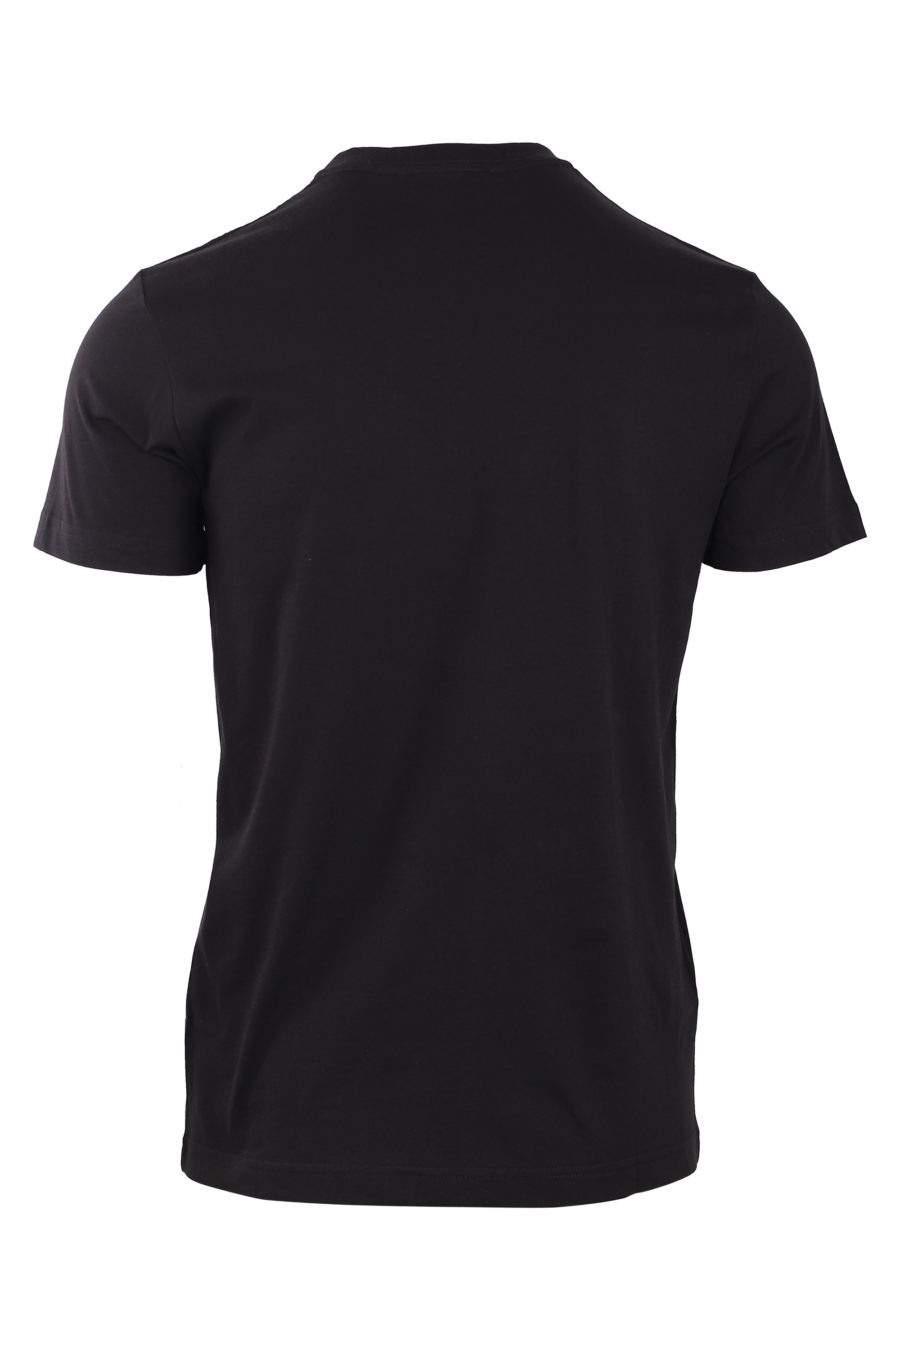 Schwarzes T-Shirt mit schillerndem Kieferlogo - IMG 0781